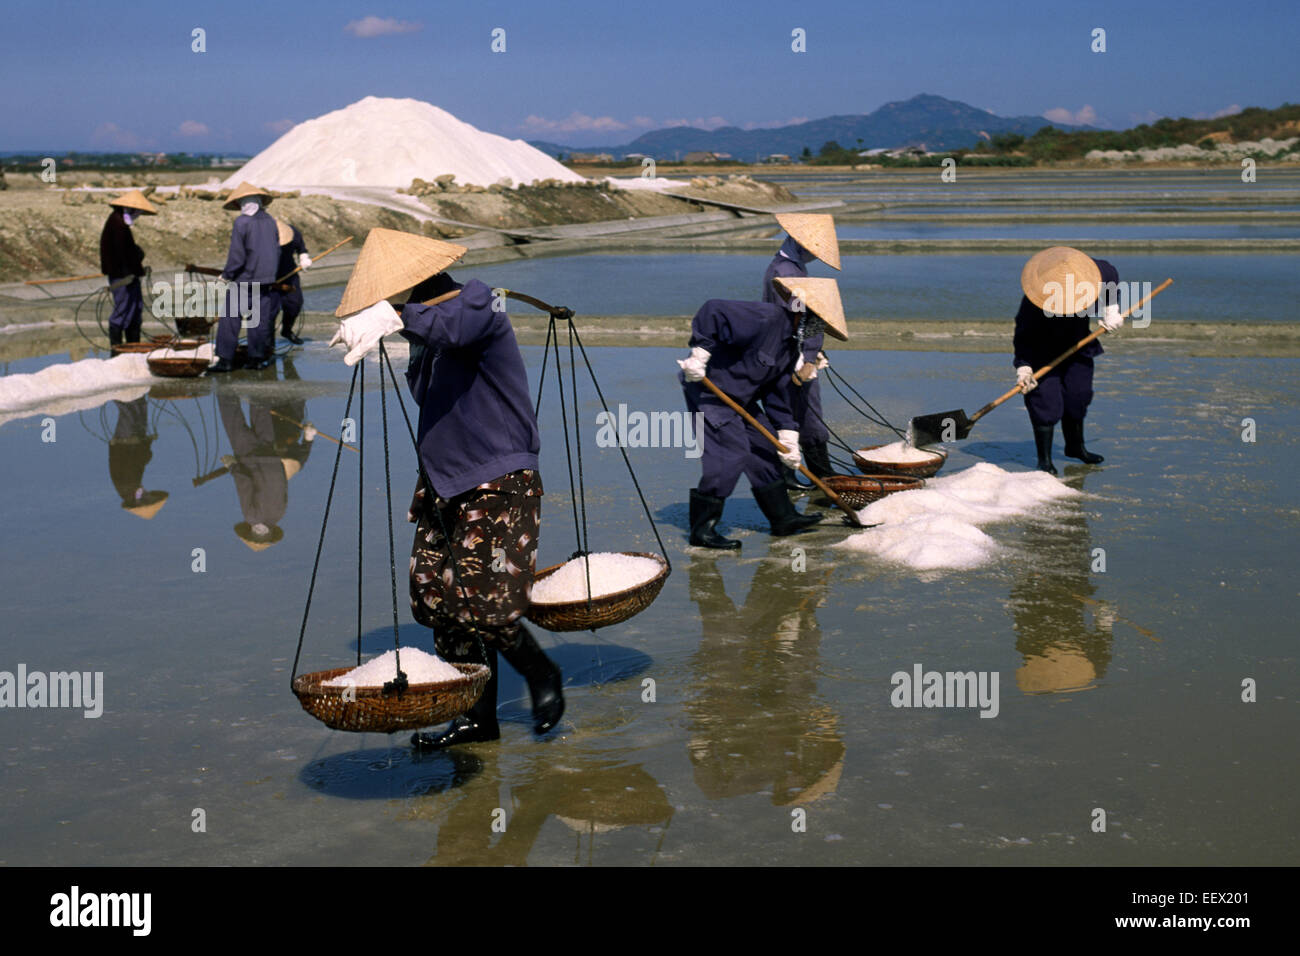 Vietnam, Nha Trang, Cam Ranh salt fields Stock Photo